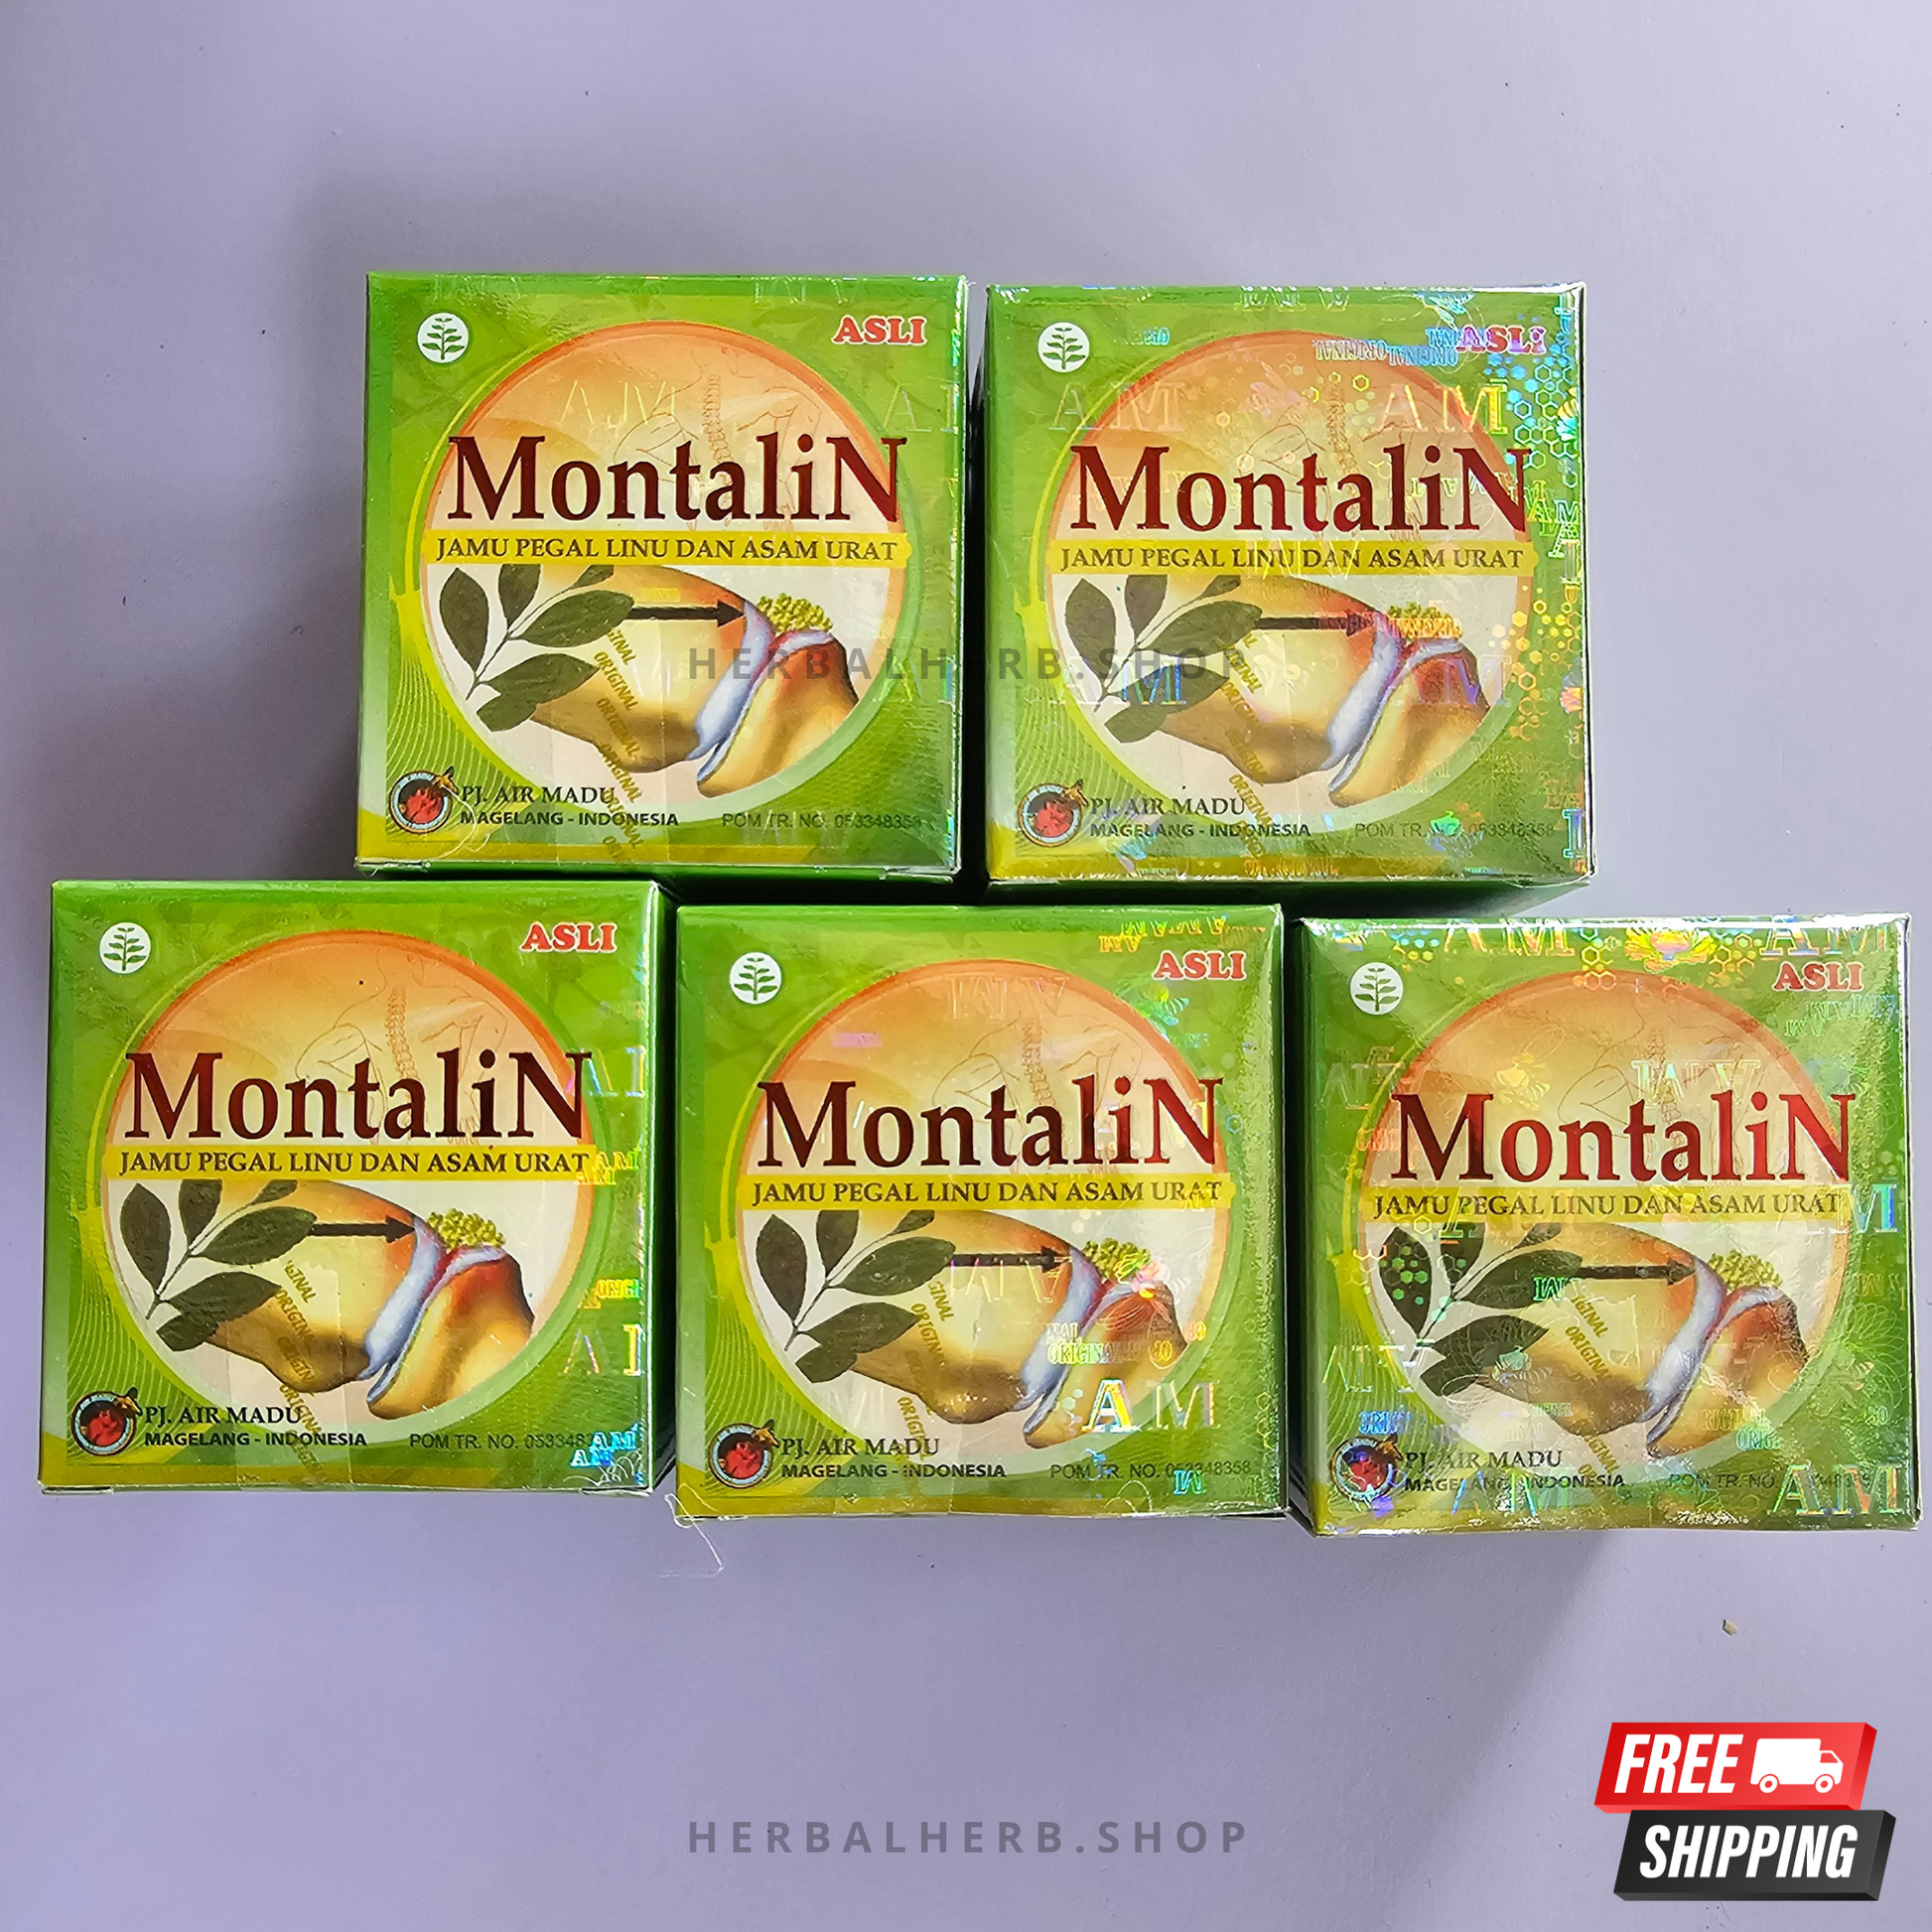 10 Boxes Montalin Herb Capsule for Urid Acid Cholestrol Rheumatism ORIGINAL